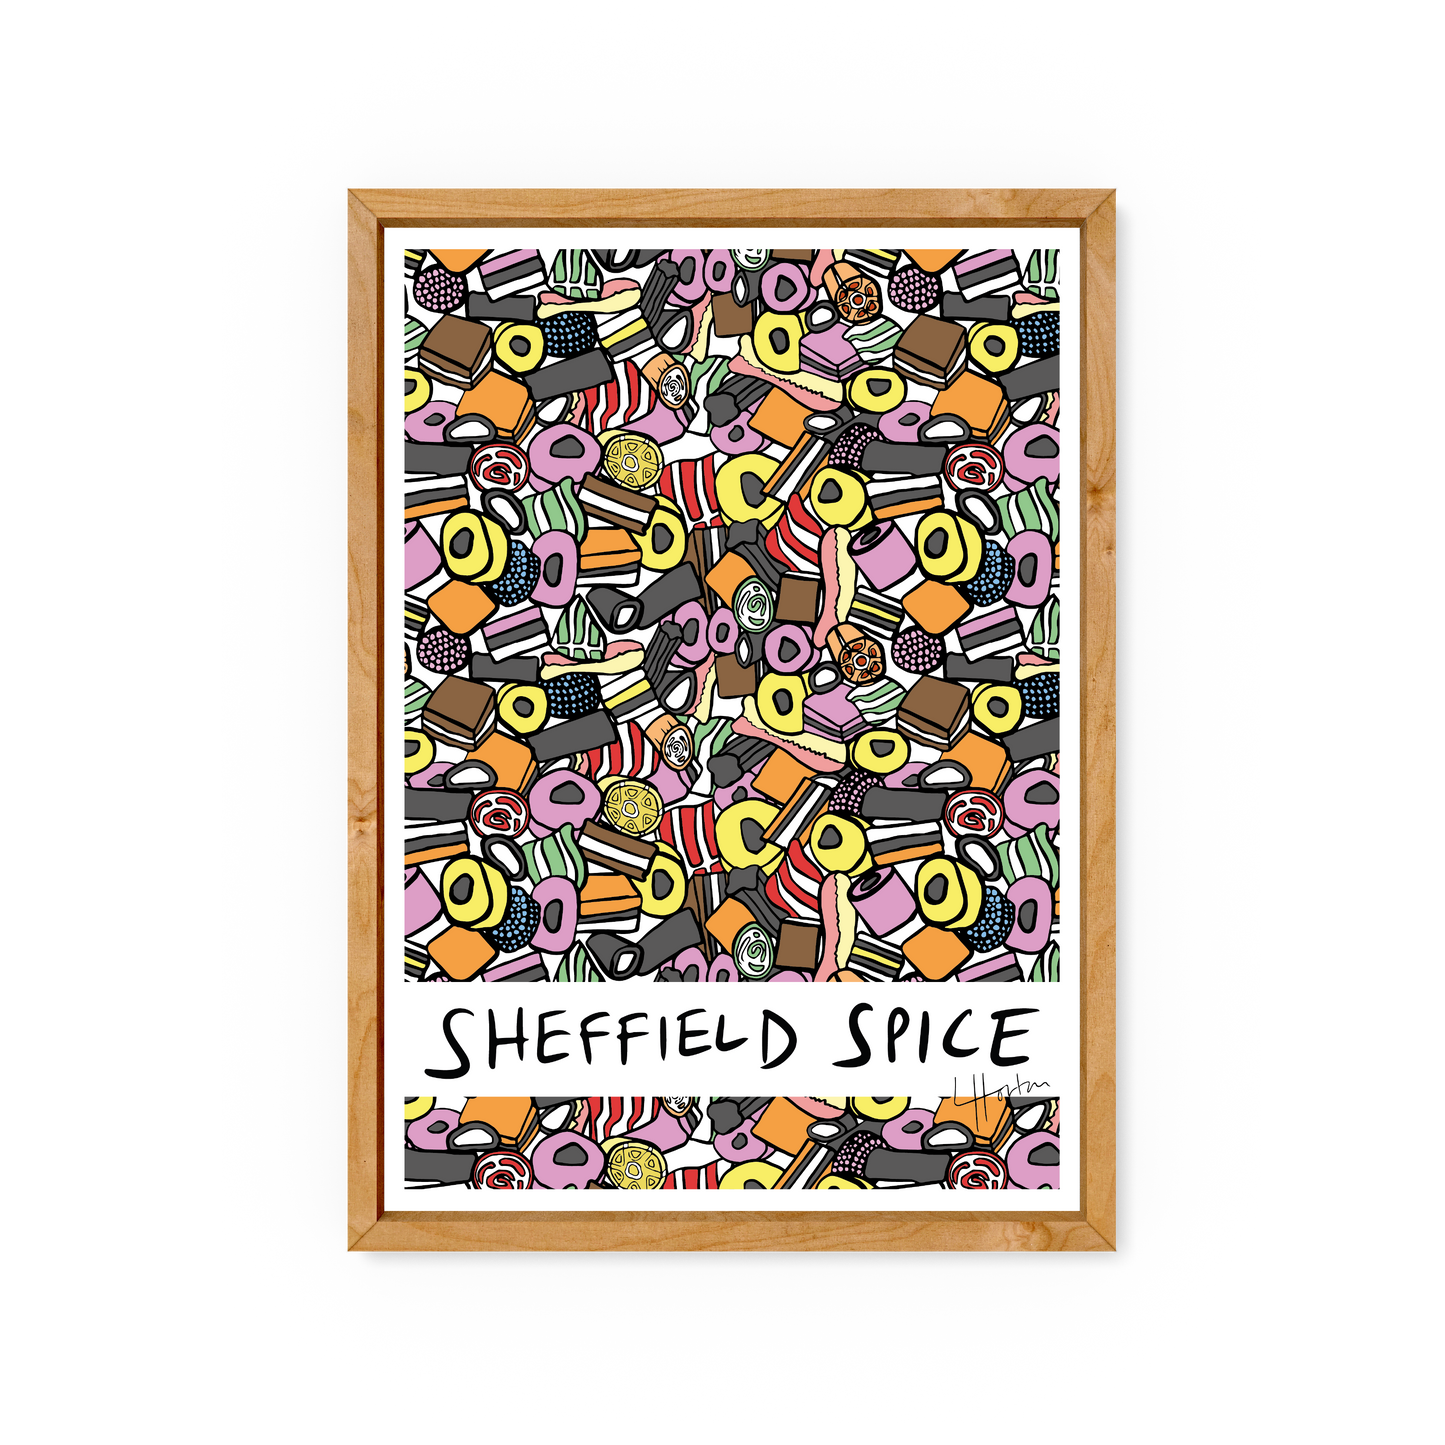 Sheffield Spice - Sheffield Sweets Print - Luke Horton